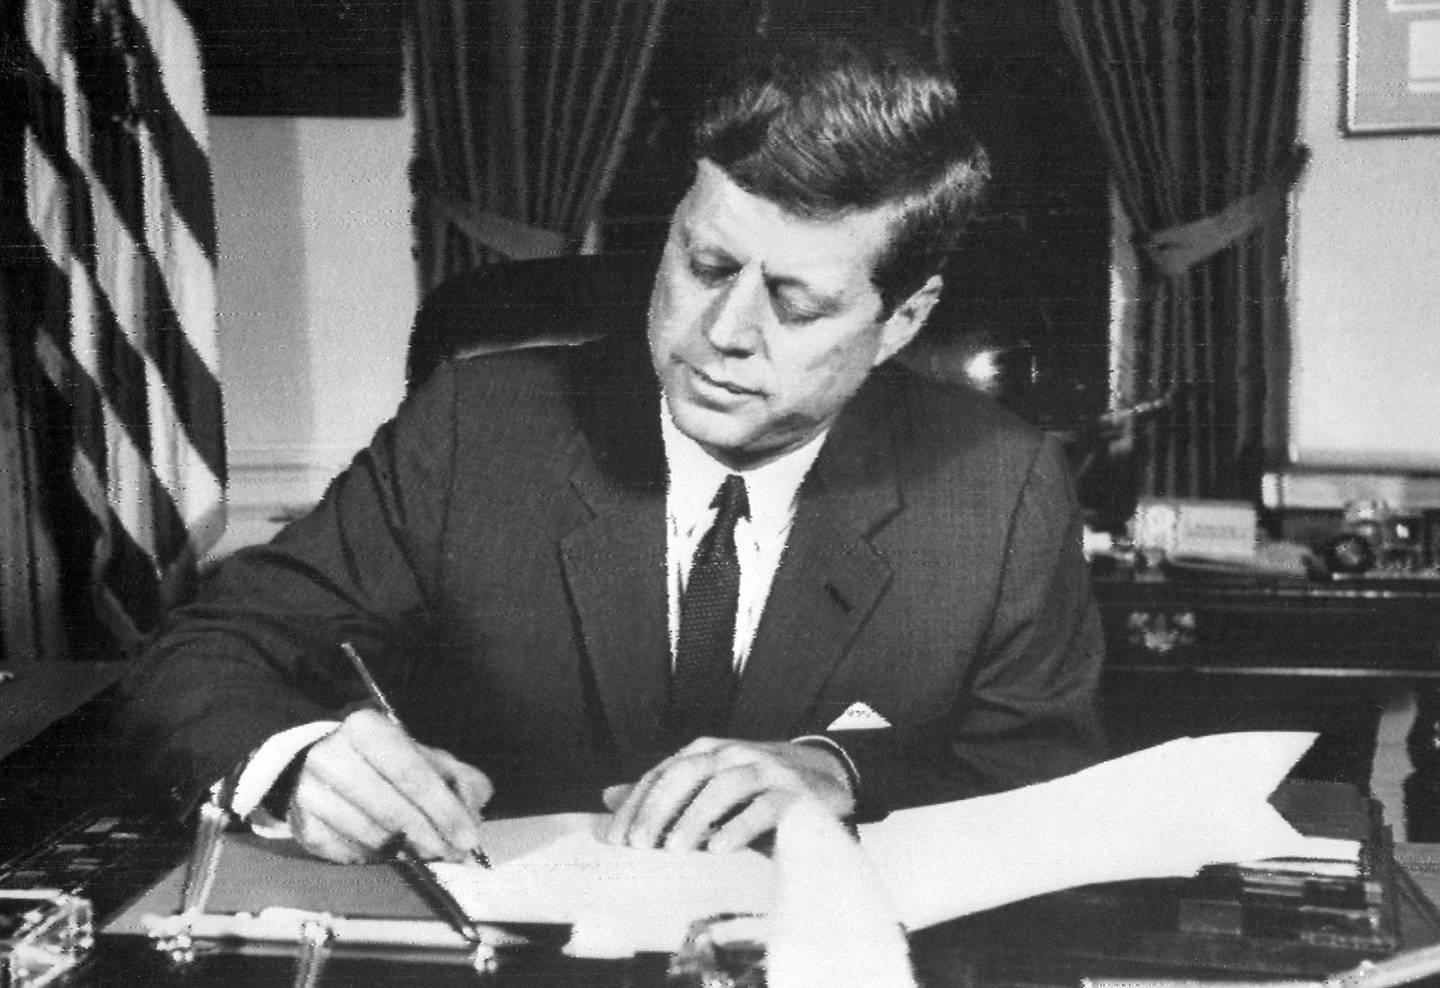 (ARCHIVOS) En esta foto de archivo tomada el 24 de octubre de 1962, el presidente estadounidense John F. Kennedy firma la orden de bloqueo naval a Cuba, en la Casa Blanca, Washington DC, durante la crisis de los misiles cubanos.  (Foto de AFP ARCHIVOS / AFP)